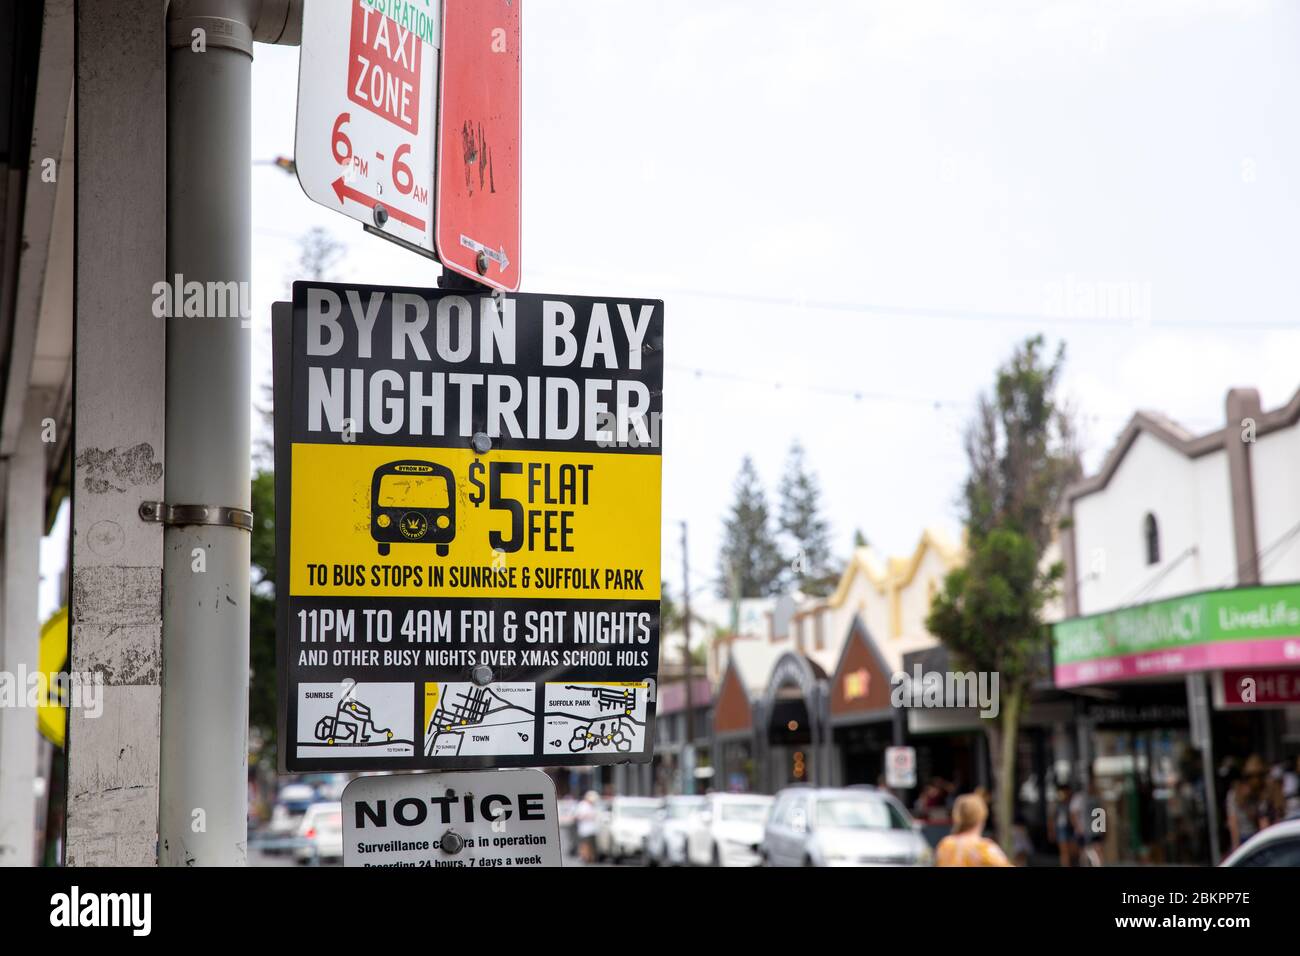 Fermata del servizio di autobus notturno di Byron Bay per coloro che hanno bisogno di mezzi pubblici durante la notte dalle 23.00 alle 4.00, Australia Foto Stock